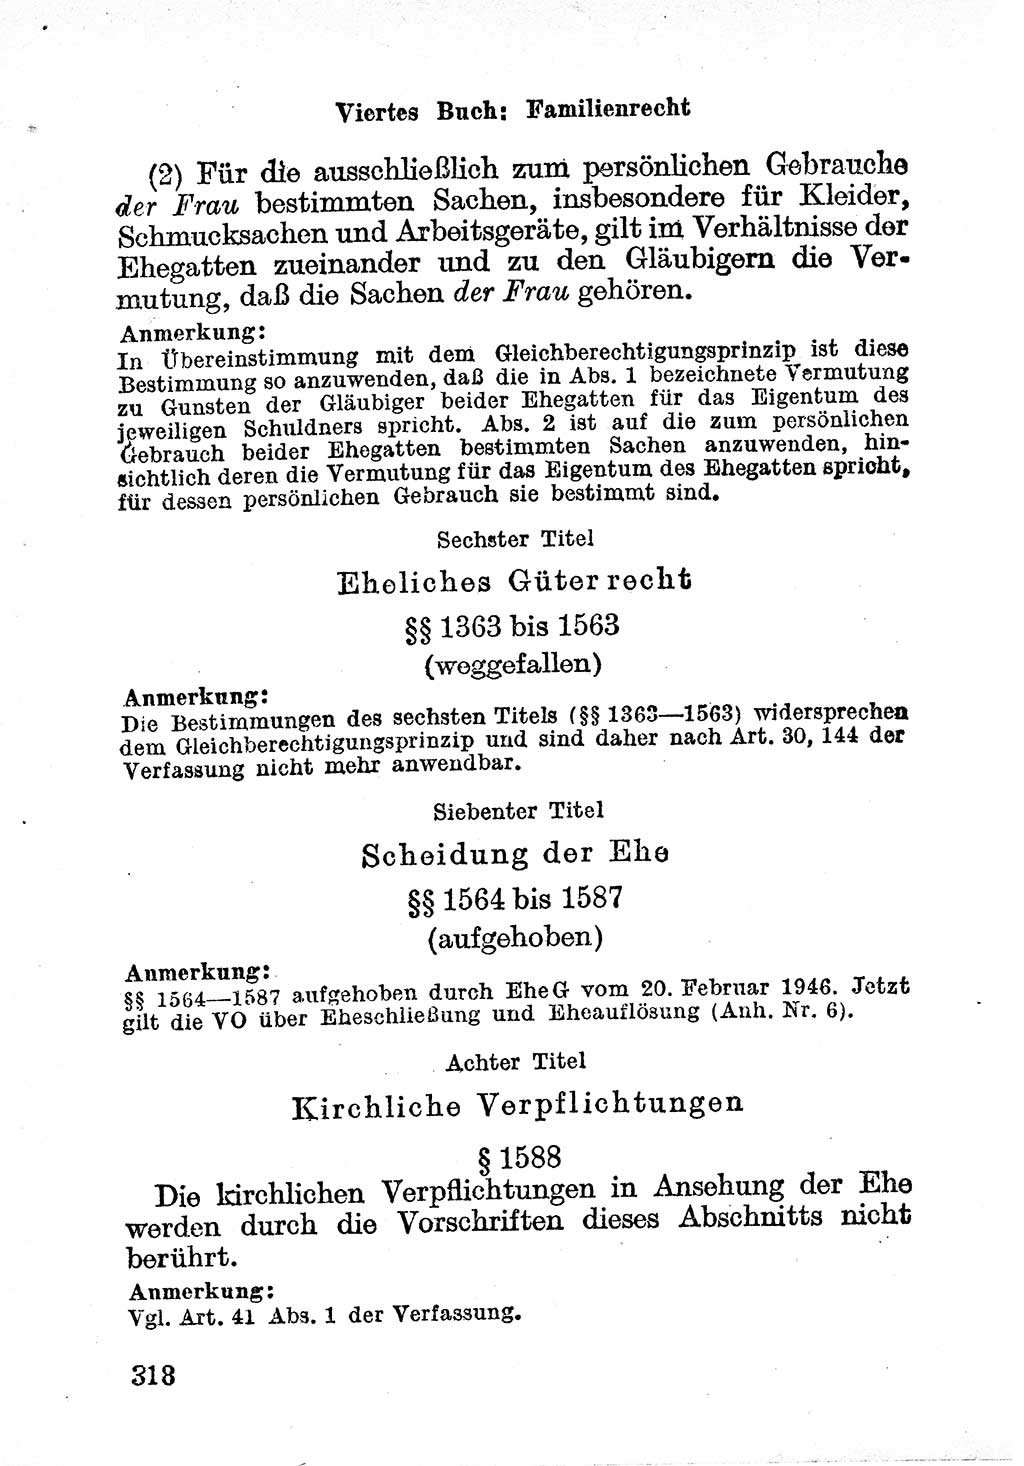 Bürgerliches Gesetzbuch (BGB) nebst wichtigen Nebengesetzen [Deutsche Demokratische Republik (DDR)] 1956, Seite 318 (BGB Nebenges. DDR 1956, S. 318)